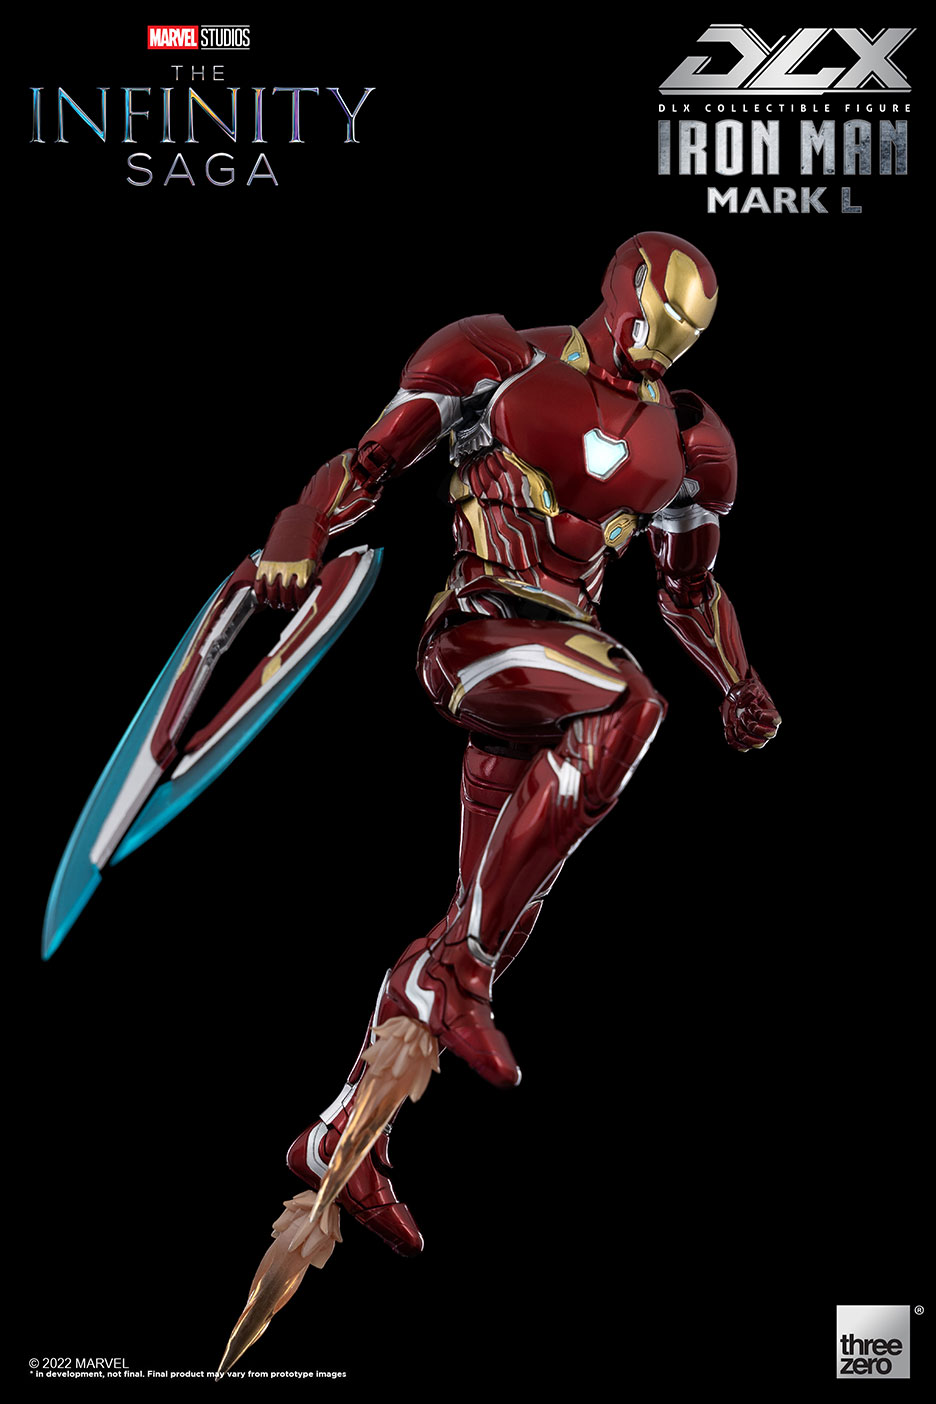 (2次受注)DLX Iron Man Mark 50(DLX アイアンマン・マーク50) The Infinity Saga(インフィニティ・サーガ) 1/12 完成品 可動フィギュア threezero(スリーゼロ)